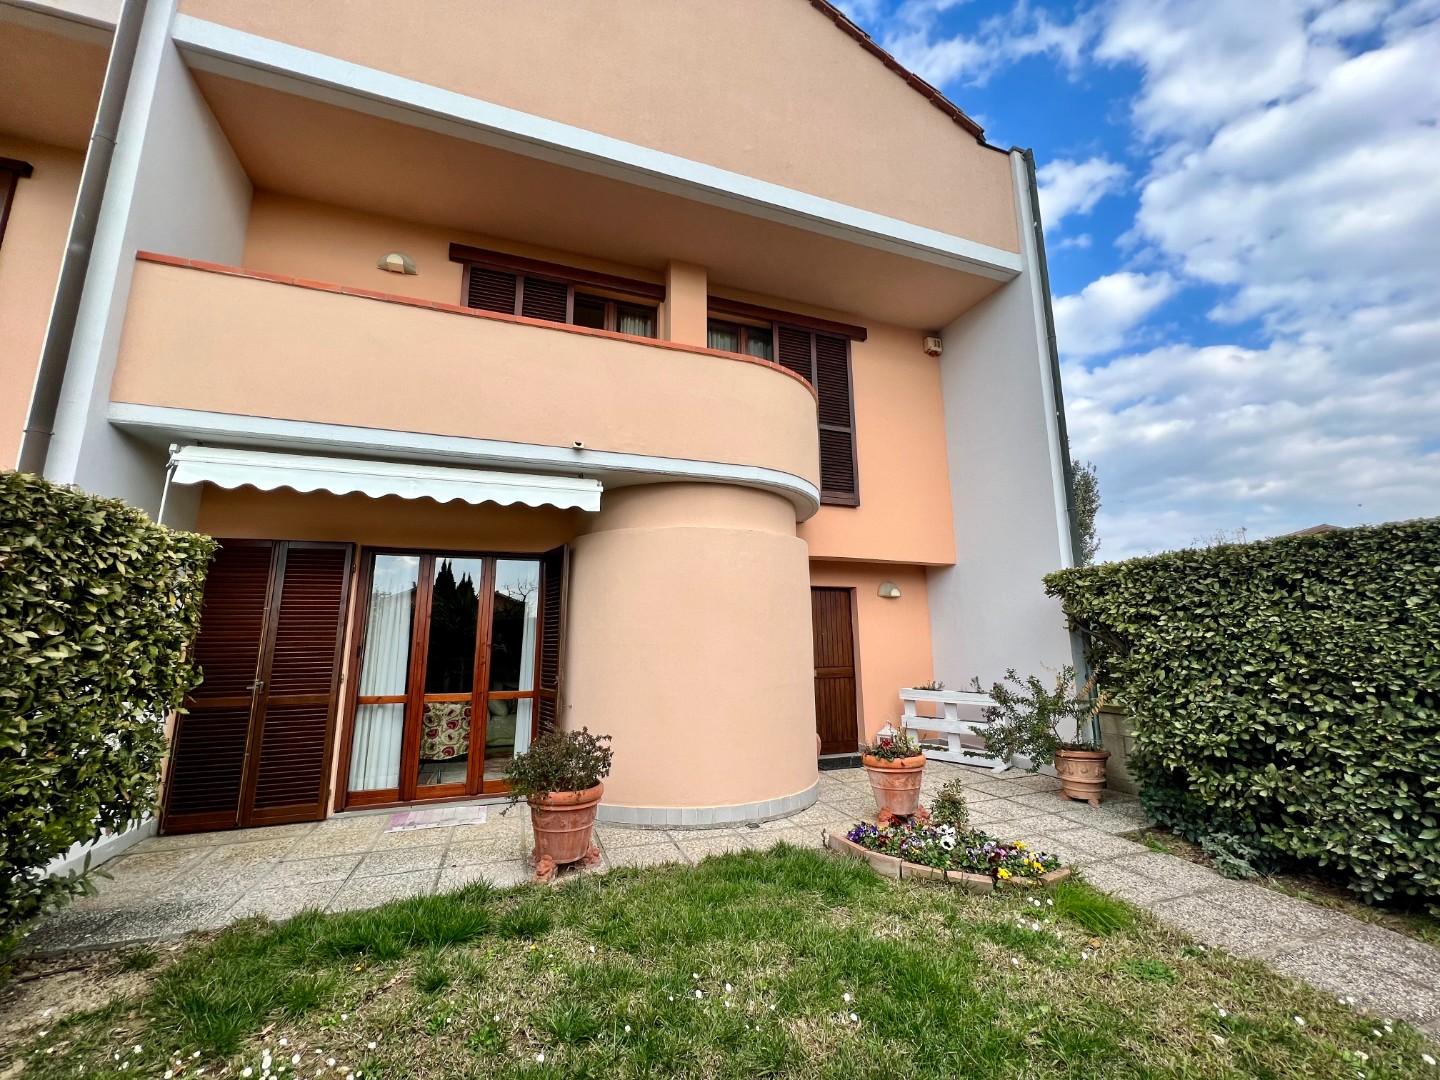 Villetta a schiera angolare in vendita a Pontedera | Agenzia Toscana Immobiliare